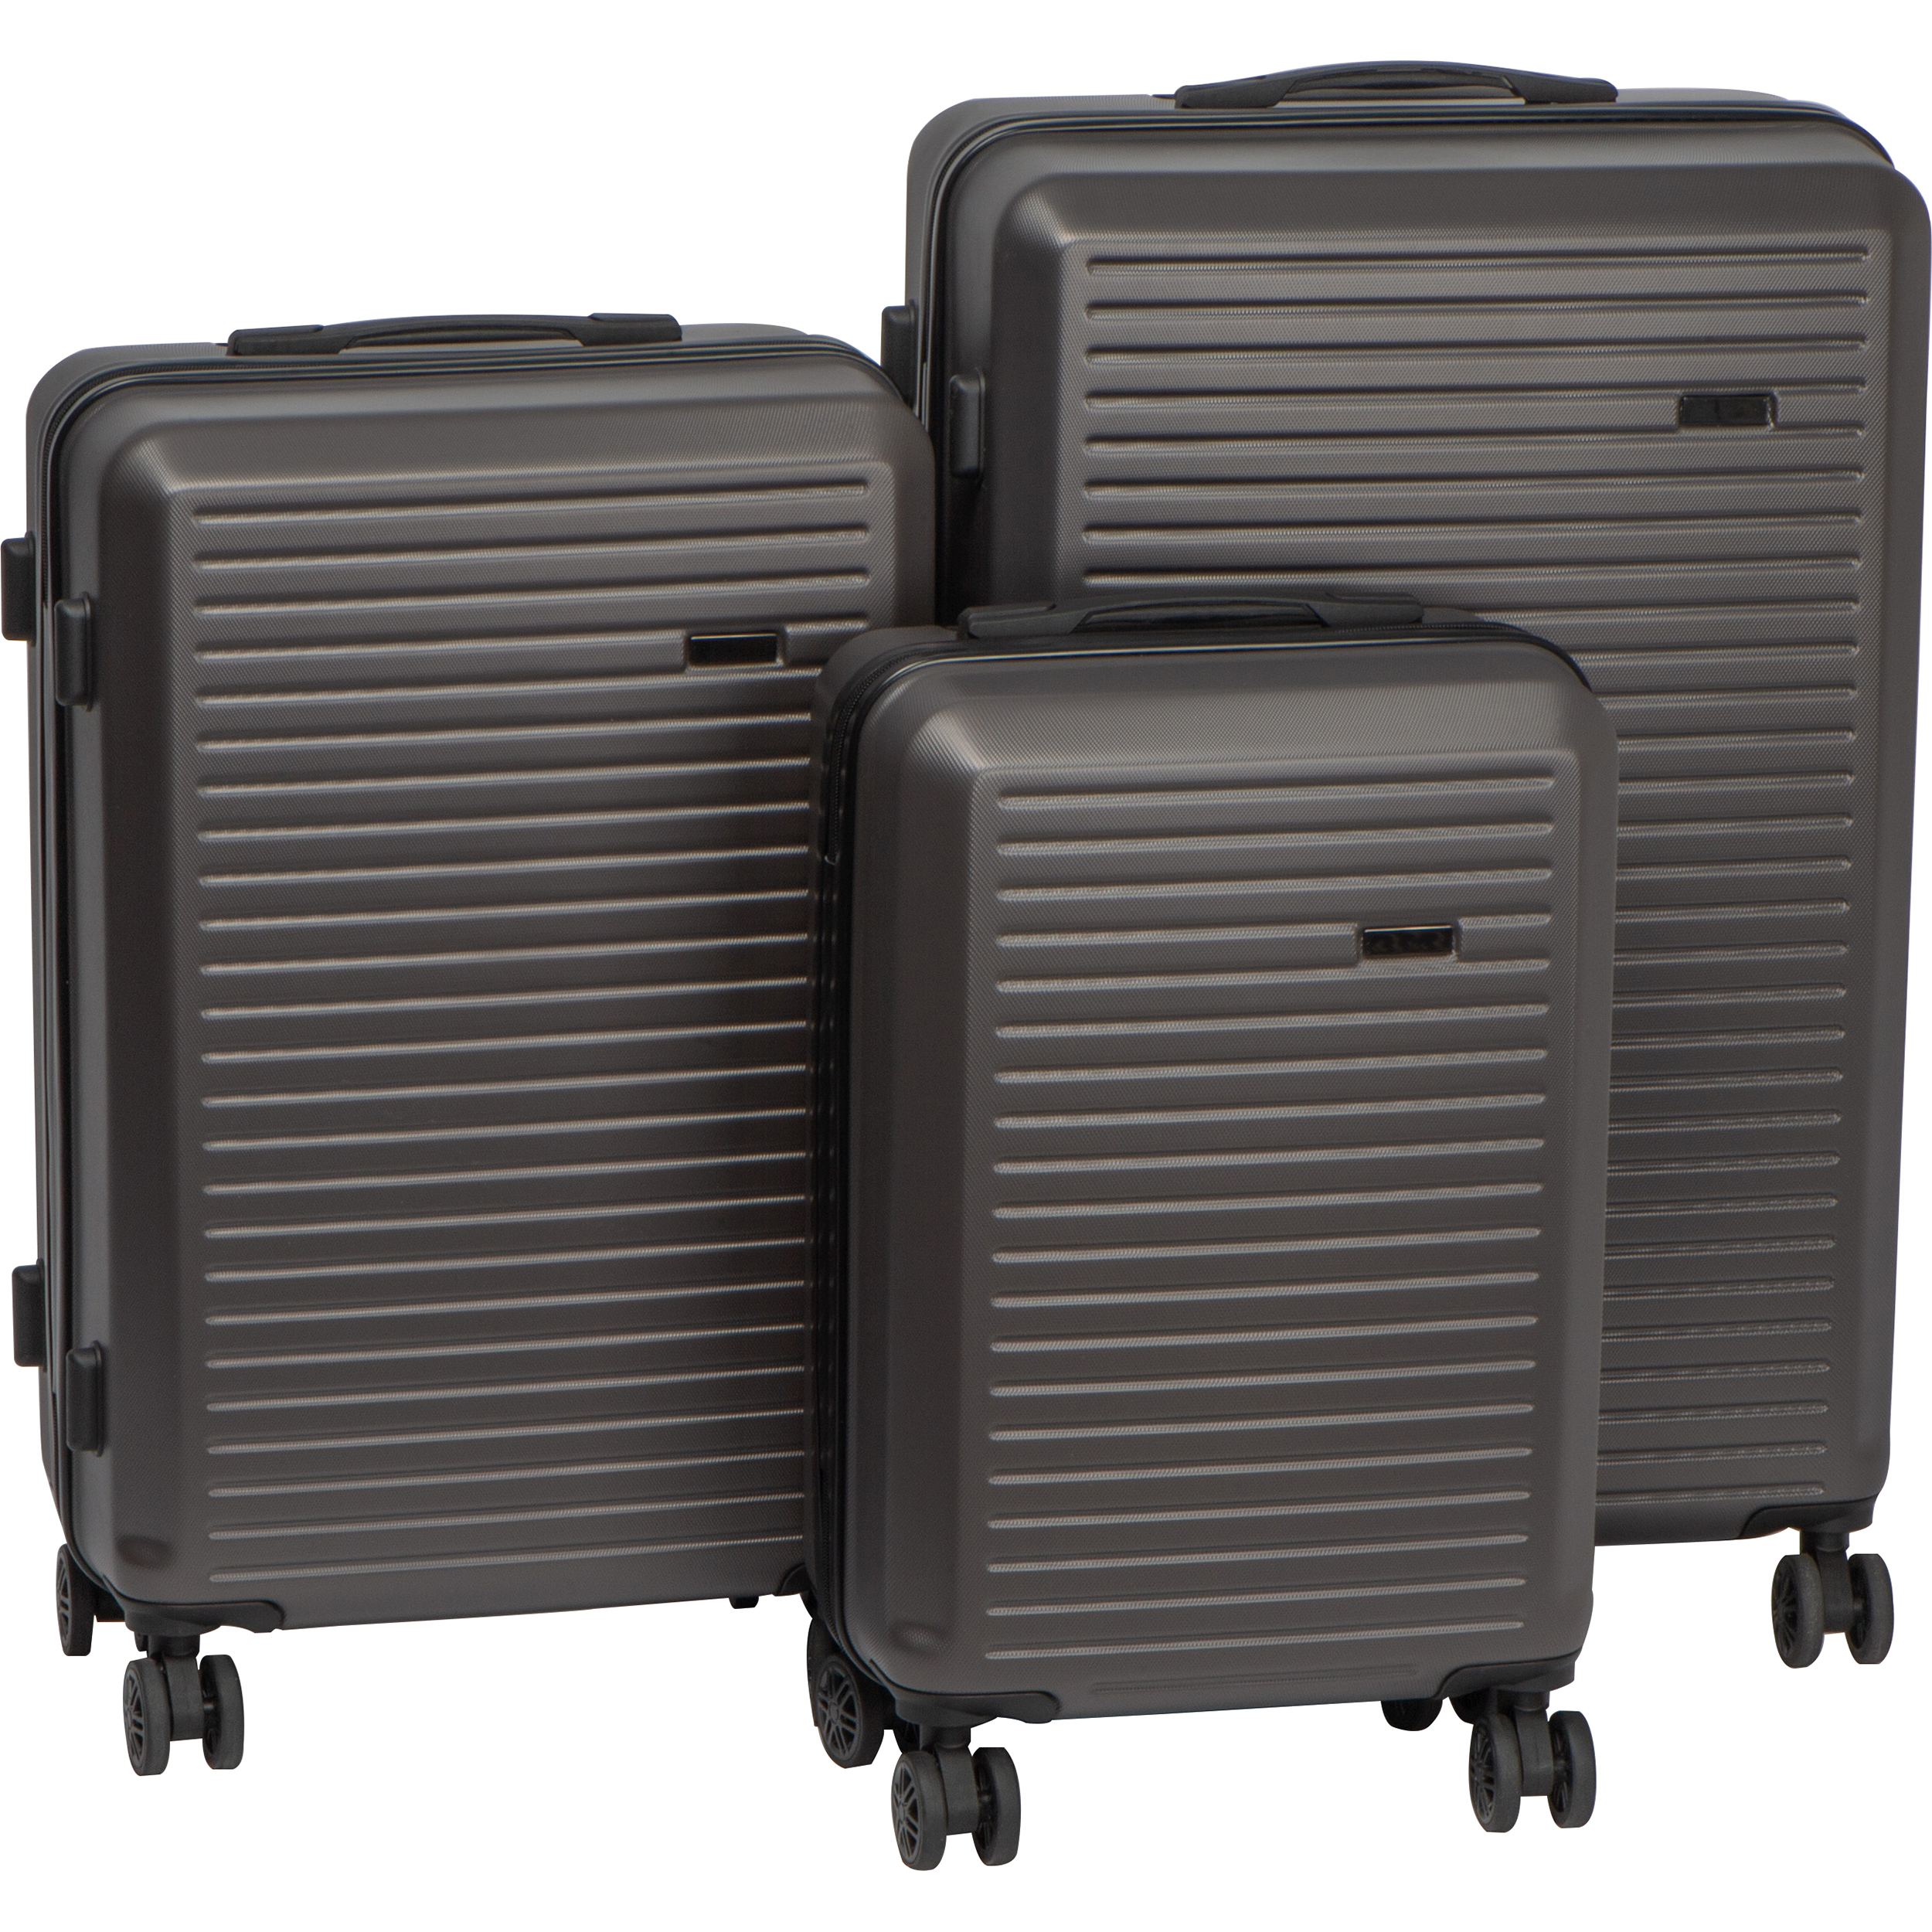 Suitcase set, 3 pieces